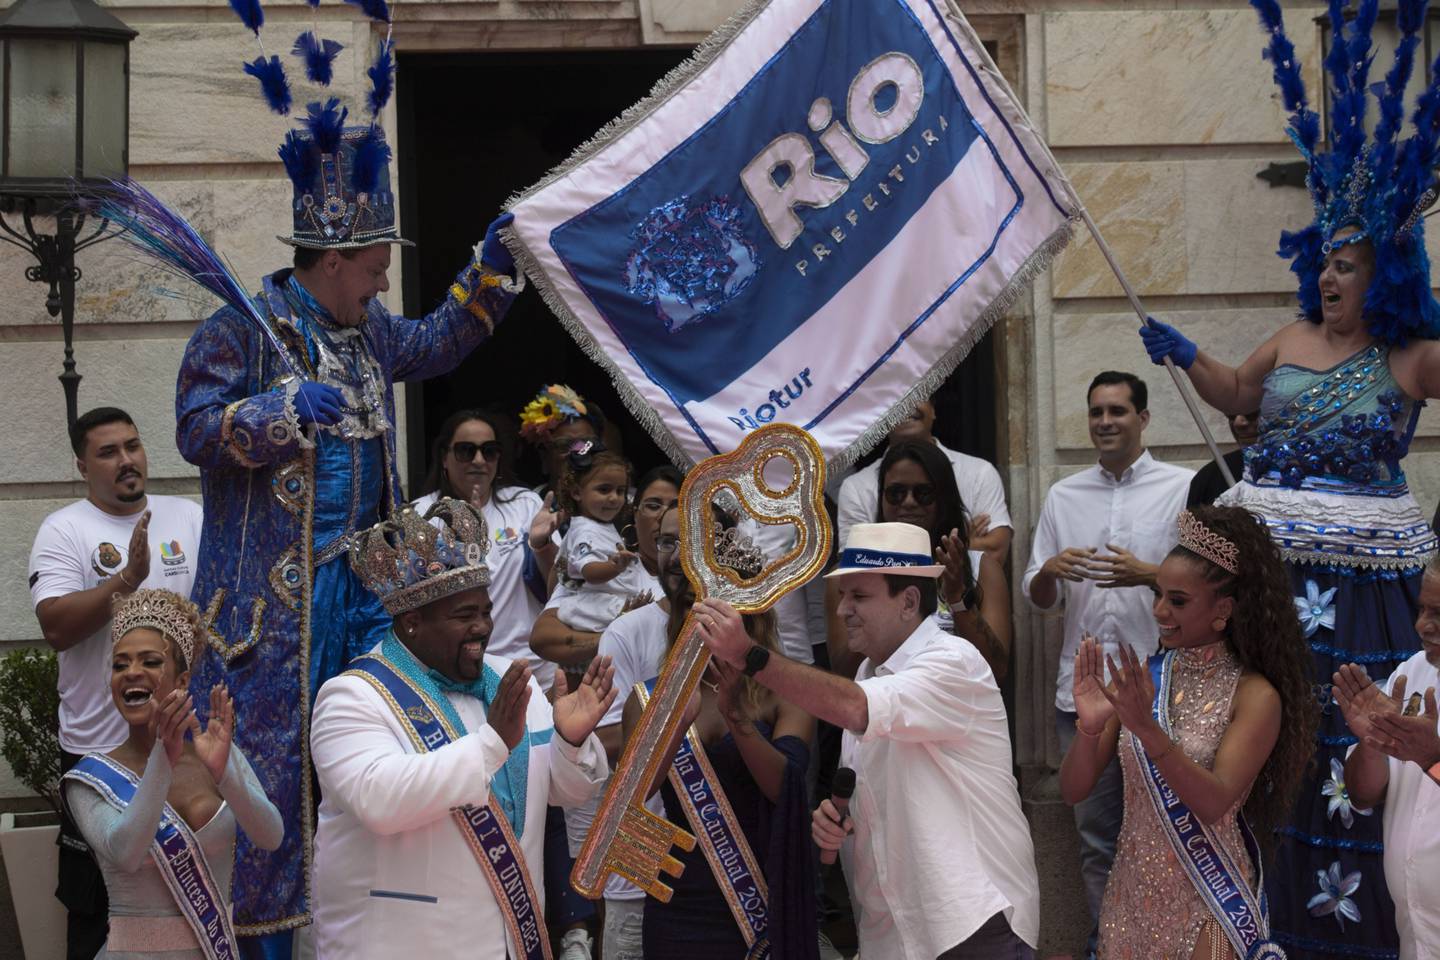 El alcalde de río le da las llaves de la ciudad a Momo King durante el Carnavaldfd